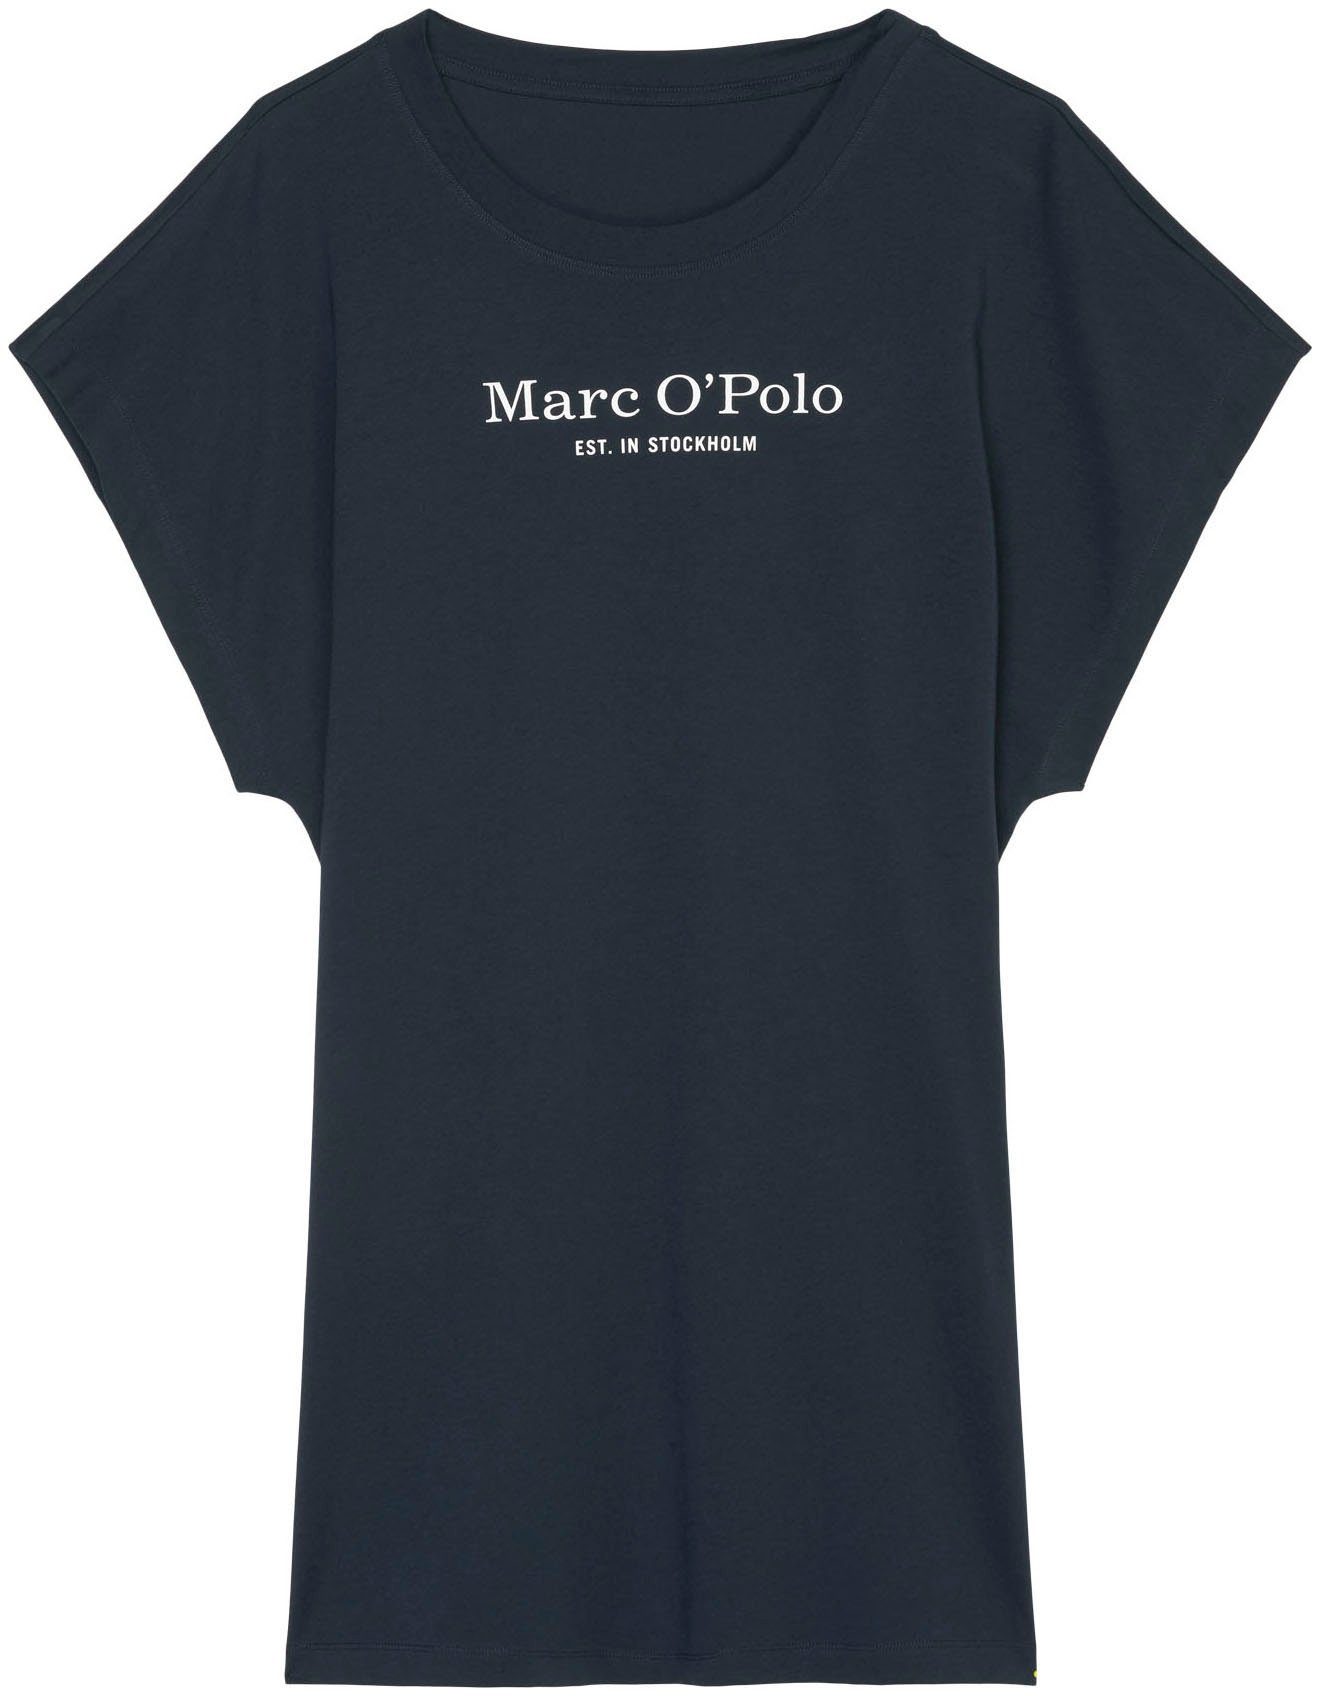 Nachthemd O'Polo 898dark navy Marc